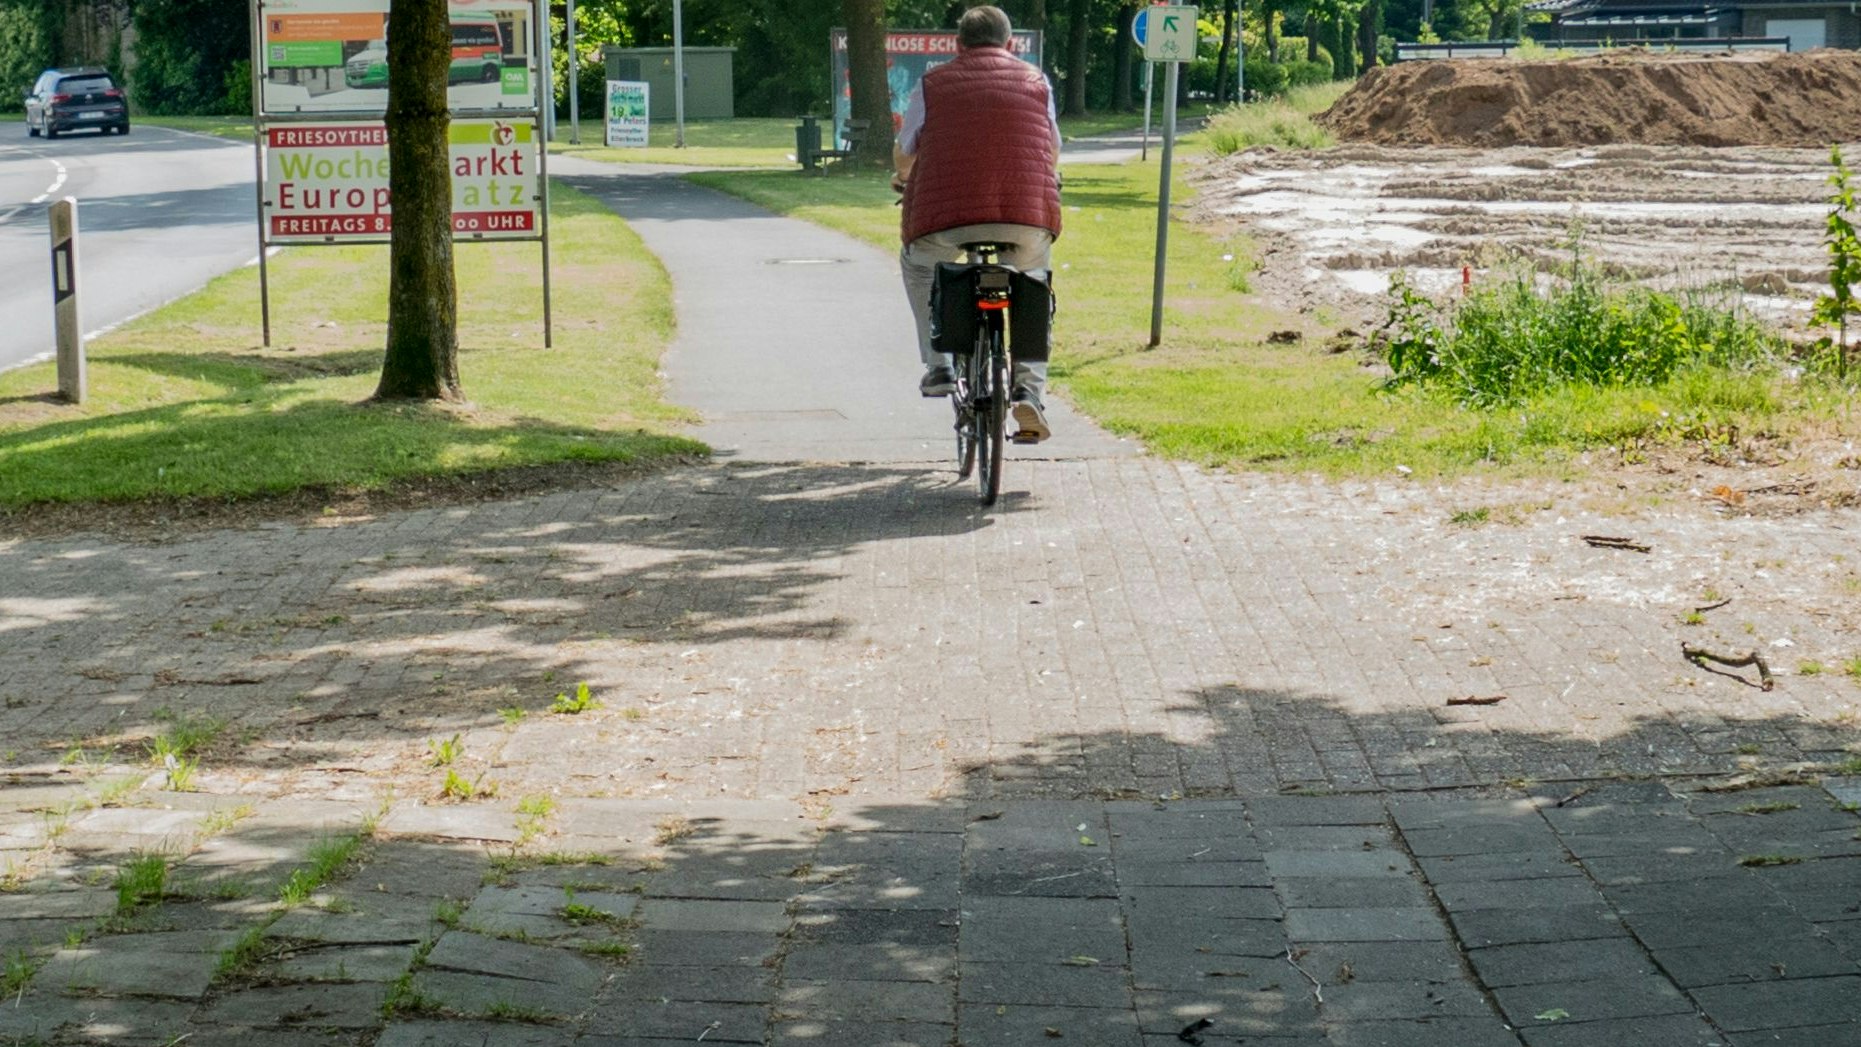 Sanierungsbedürftig: Wie viele andere ist auch der Rad- und Fußweg entlang der Straße Grüner Hof in schlechtem Zustand. Ein Radwegekonzept soll Abhilfe schaffen. Foto: Stix